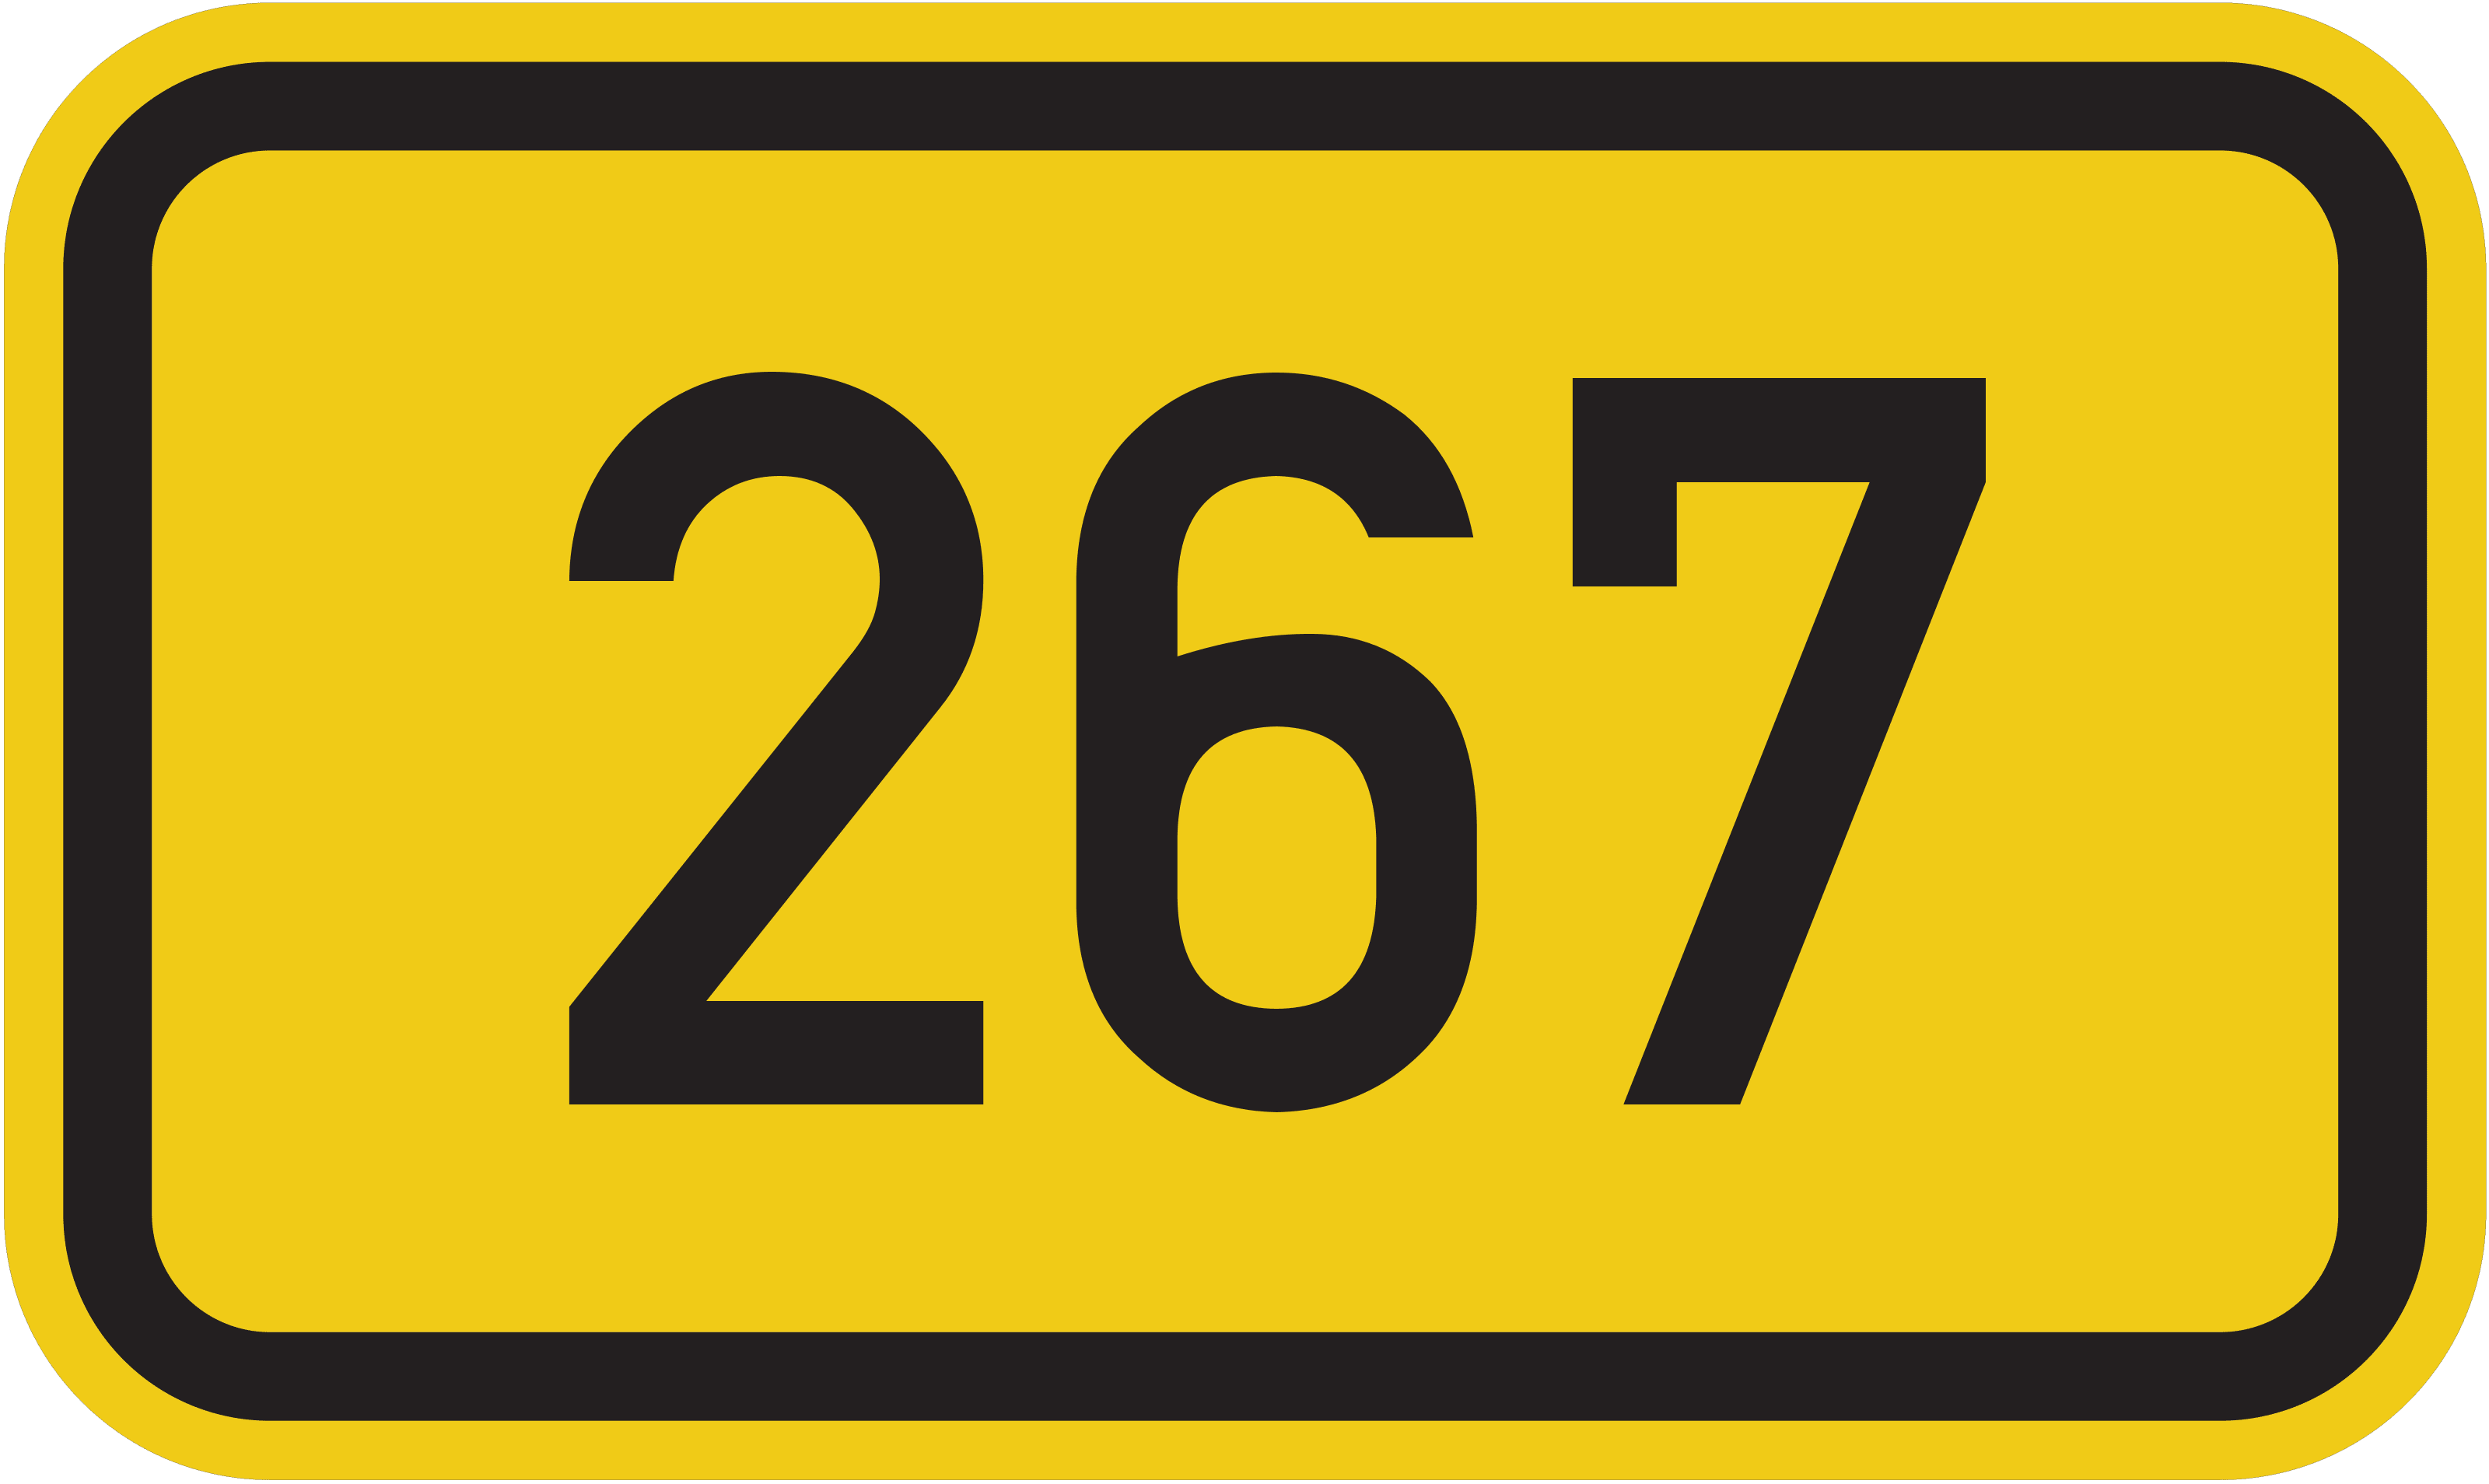 Bundesstraße B 267